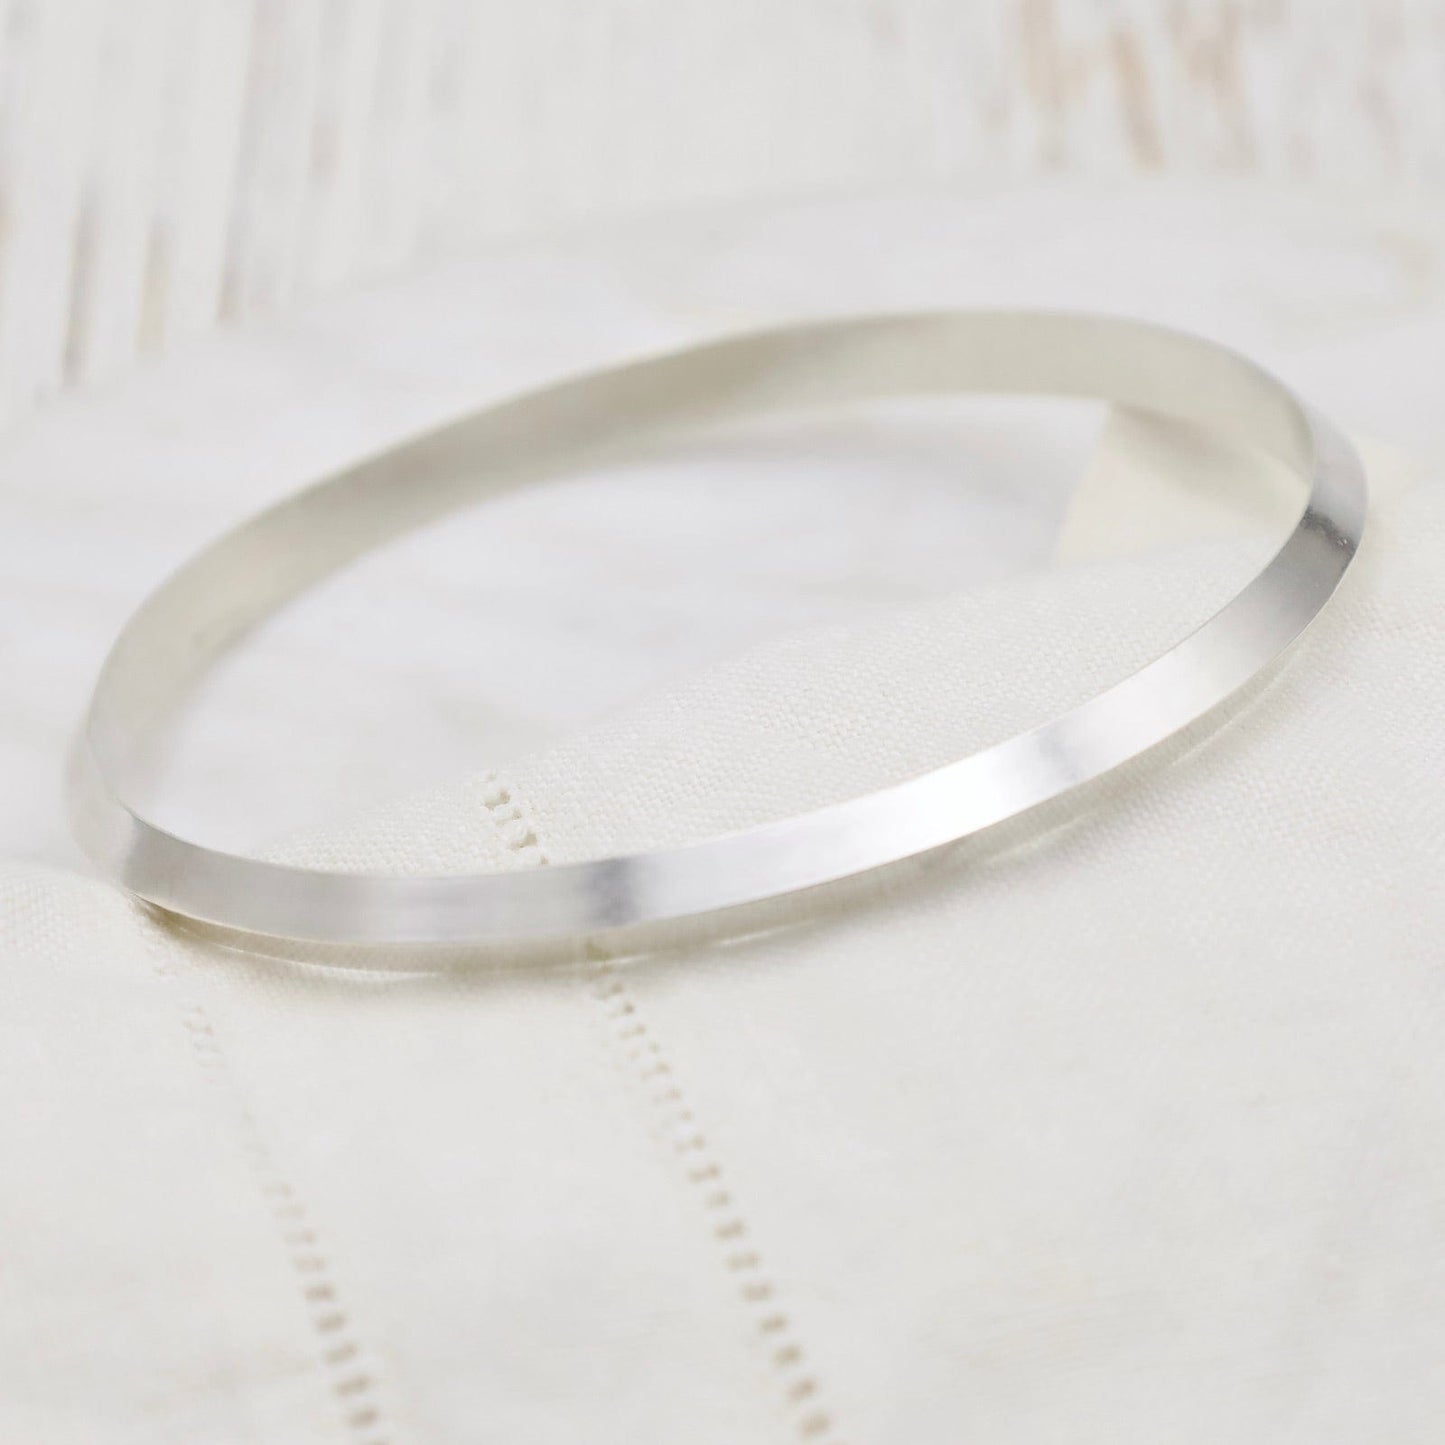 SAILOR Bracelet - Minimal Sterling Silver Cuff Bracelet, 3 mm wide, Br –  Turner Duncan Jewelry Designs